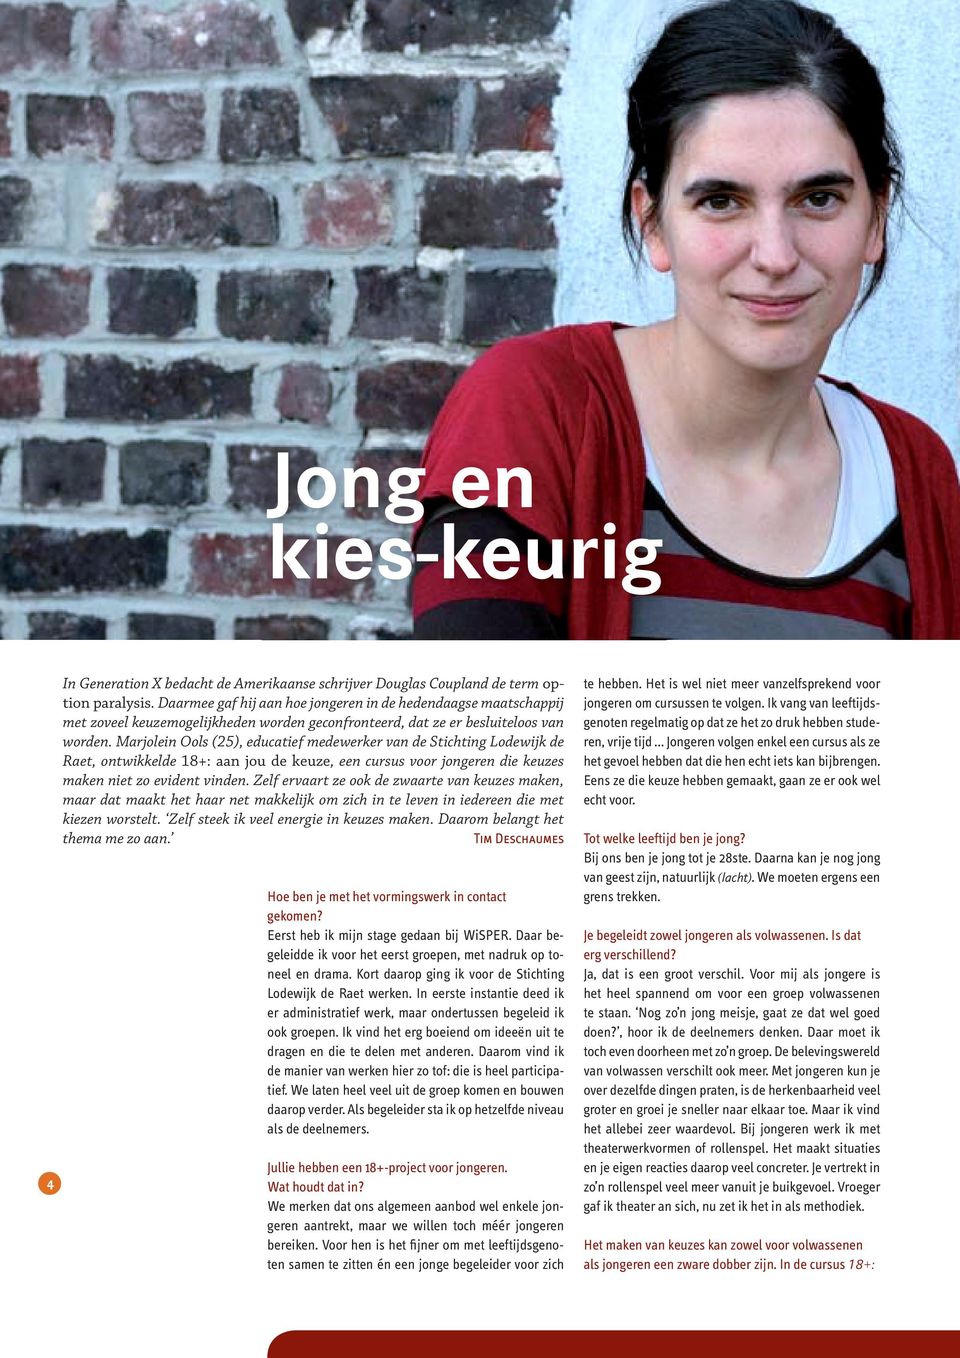 Marjolein Ools (25), educatie medewerker van de Stichting Lodewijk de Raet, ontwikkelde 18+: aan jou de keuze, een cursus voor jongeren die keuzes maken niet zo evident vinden.